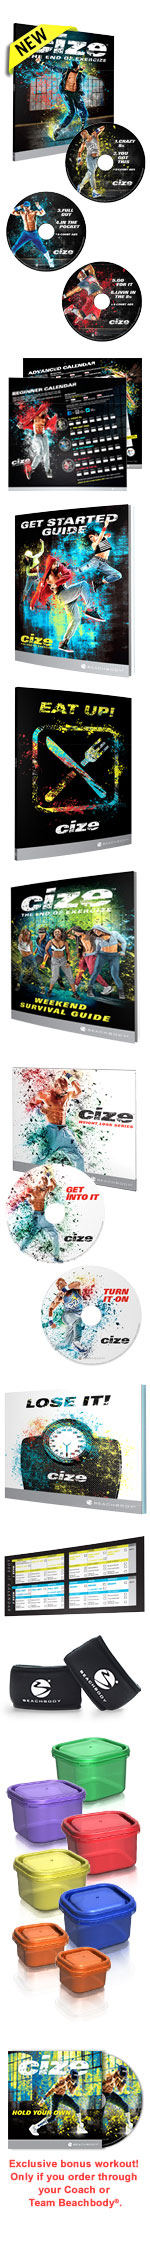 Cize Deluxe DVD Kit.